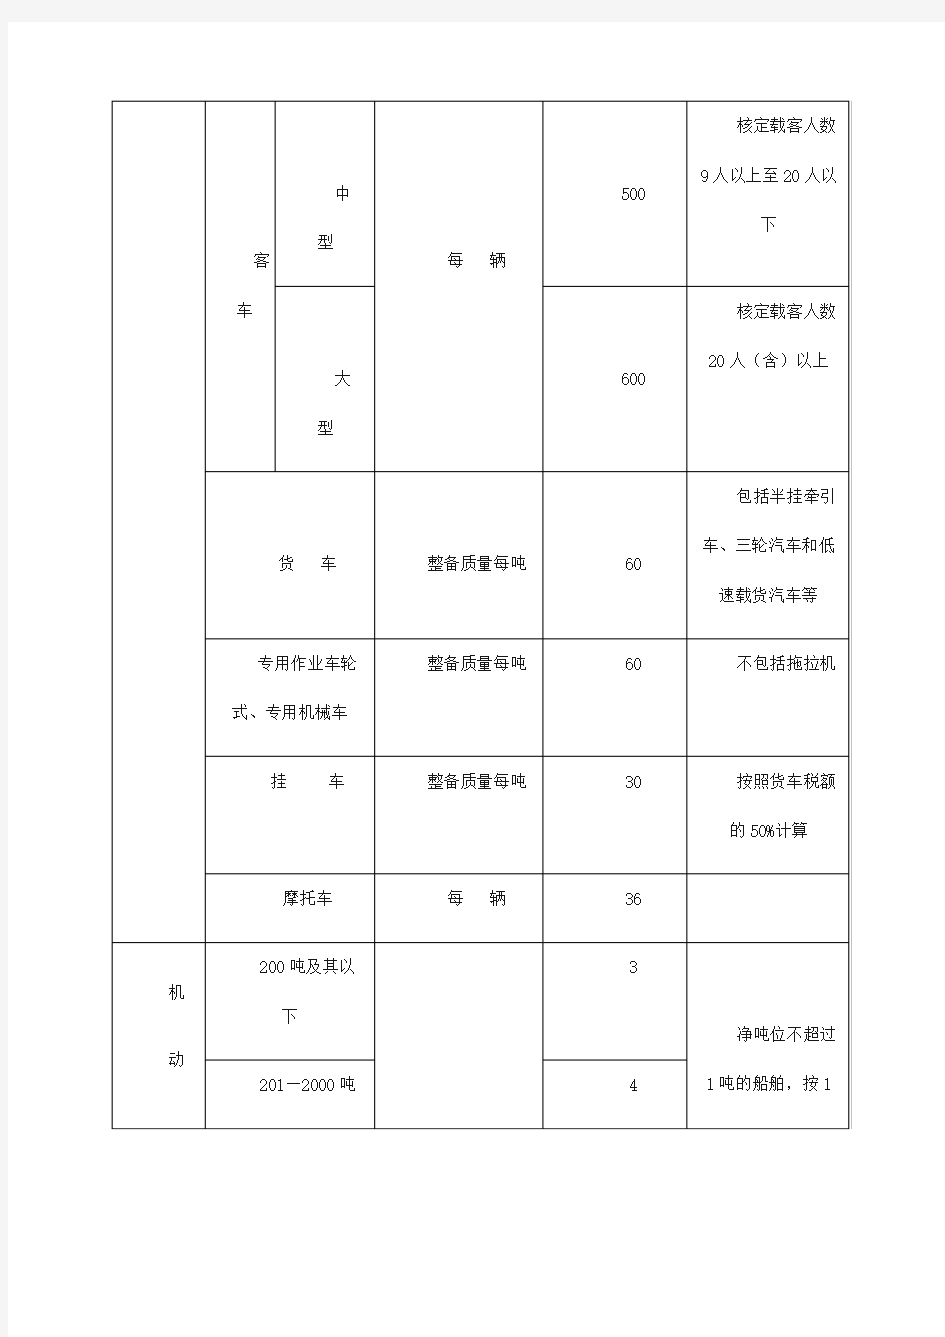 重庆车船税税目税额表